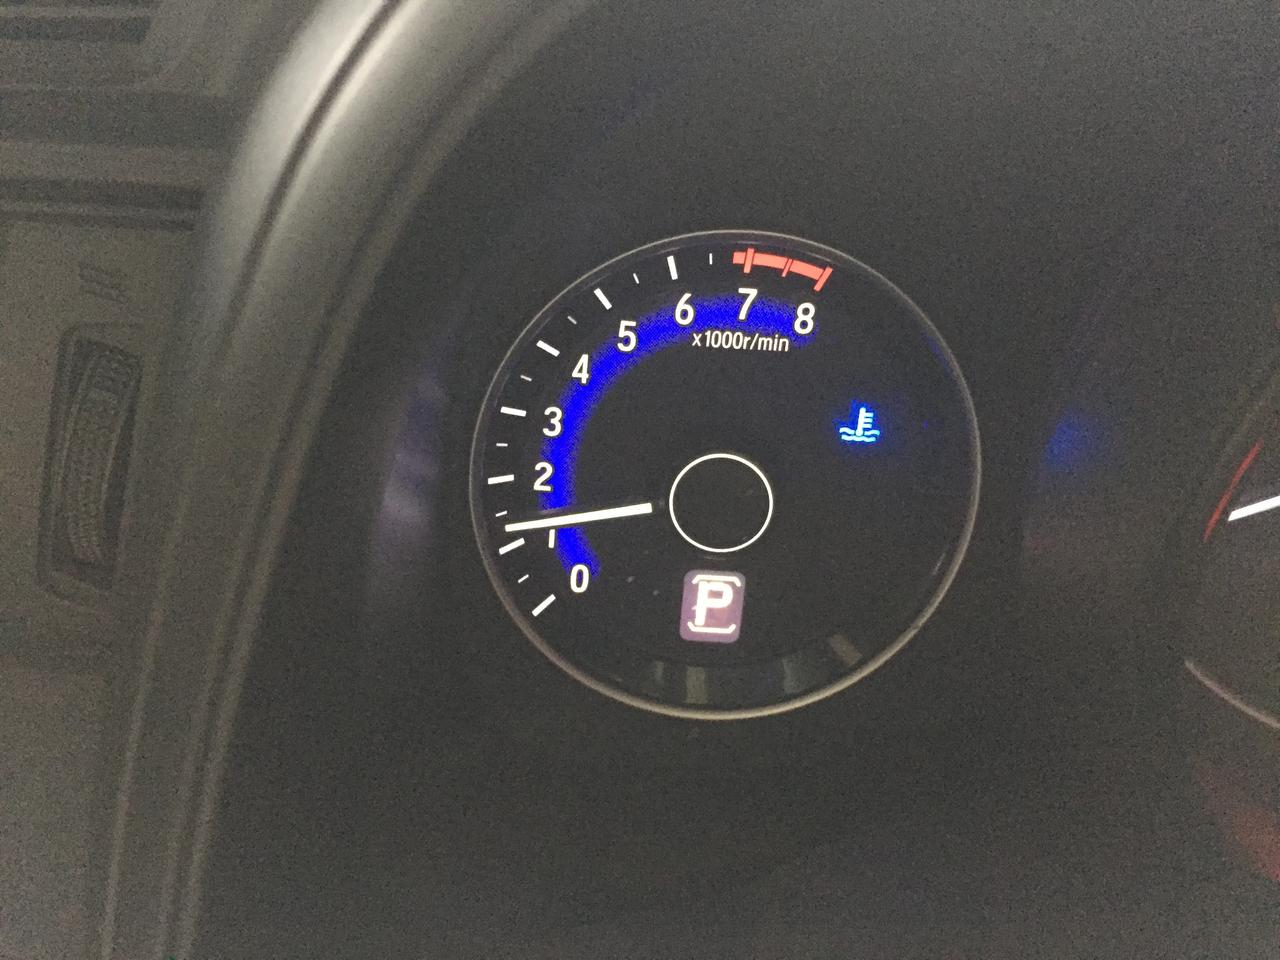 注意你车上的低温警示灯 最近气温下降的很快,今天开车看仪表